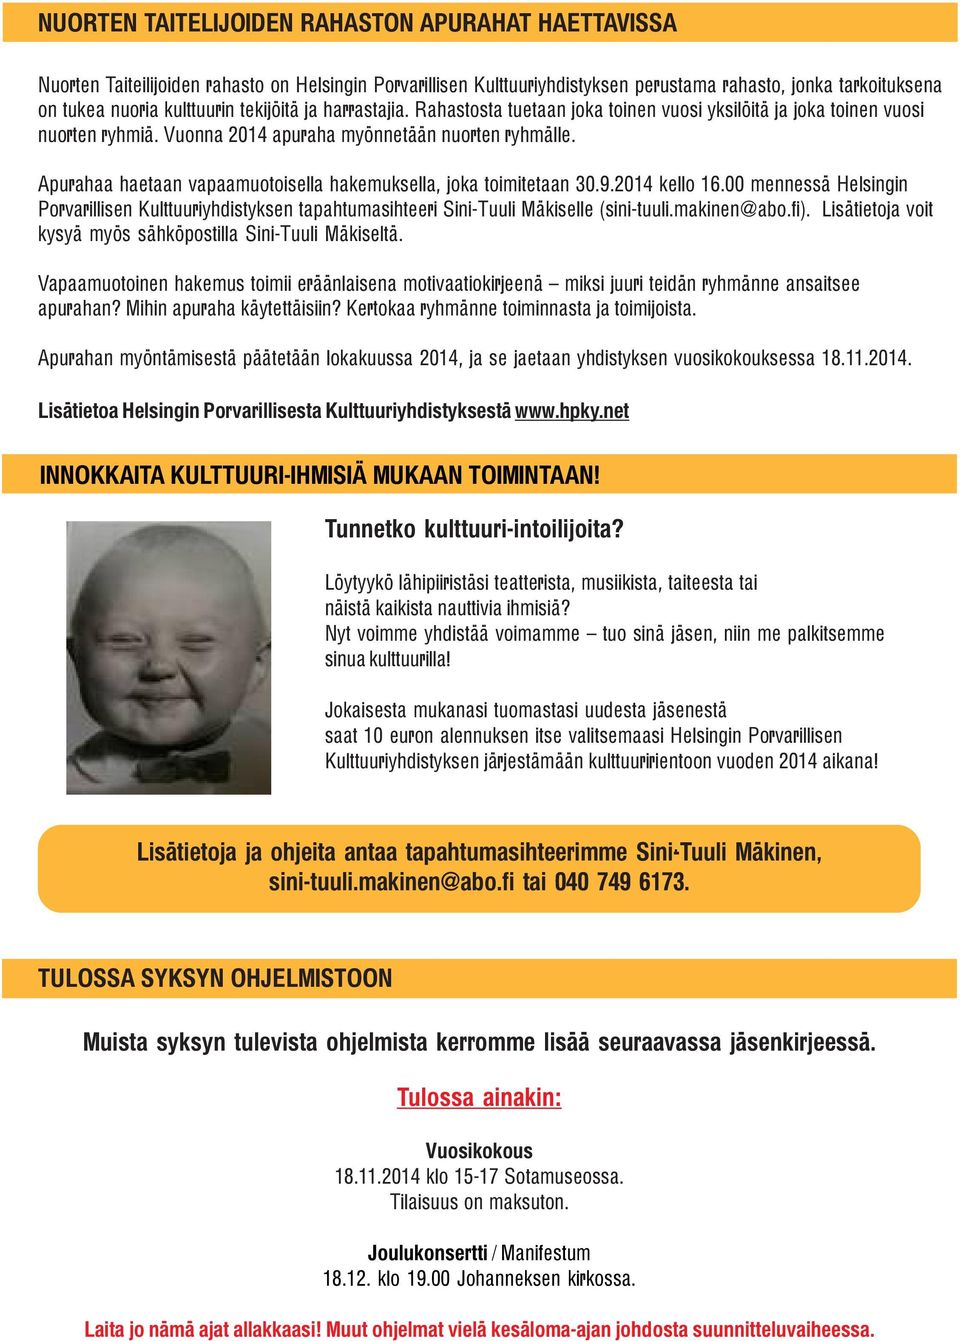 Apurahaa haetaan vapaamuotoisella hakemuksella, joka toimitetaan 30.9.2014 kello 16.00 mennessä Helsingin Porvarillisen Kulttuuriyhdistyksen tapahtumasihteeri Sini-Tuuli Mäkiselle ().